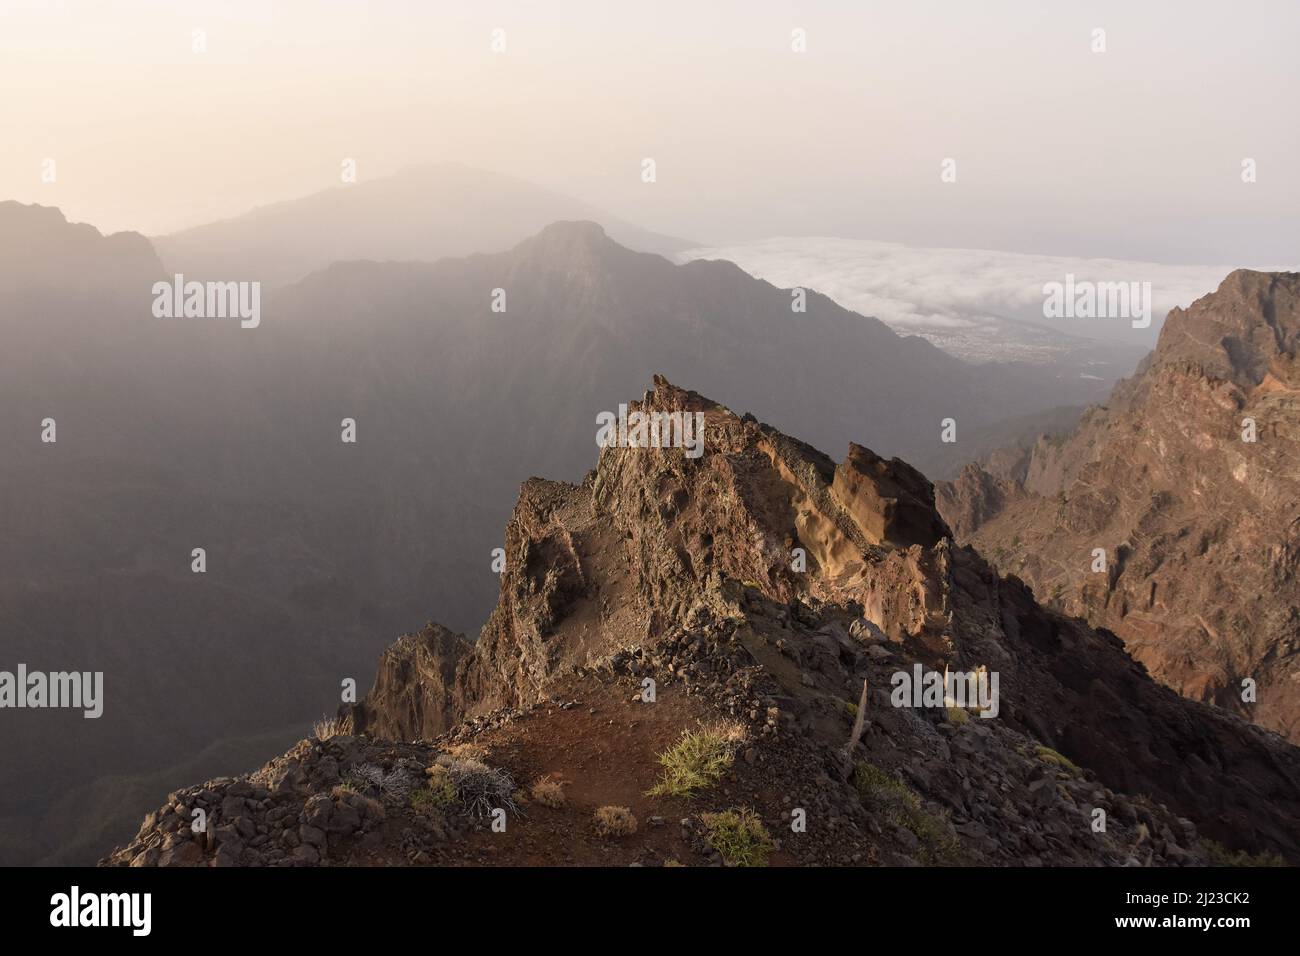 Roque de los Muchachos, elevación de 2423m , el lugar más alto de las Islas Canarias La Palma, situado en el Parque Nacional Caldera de Taburiente. Foto de stock